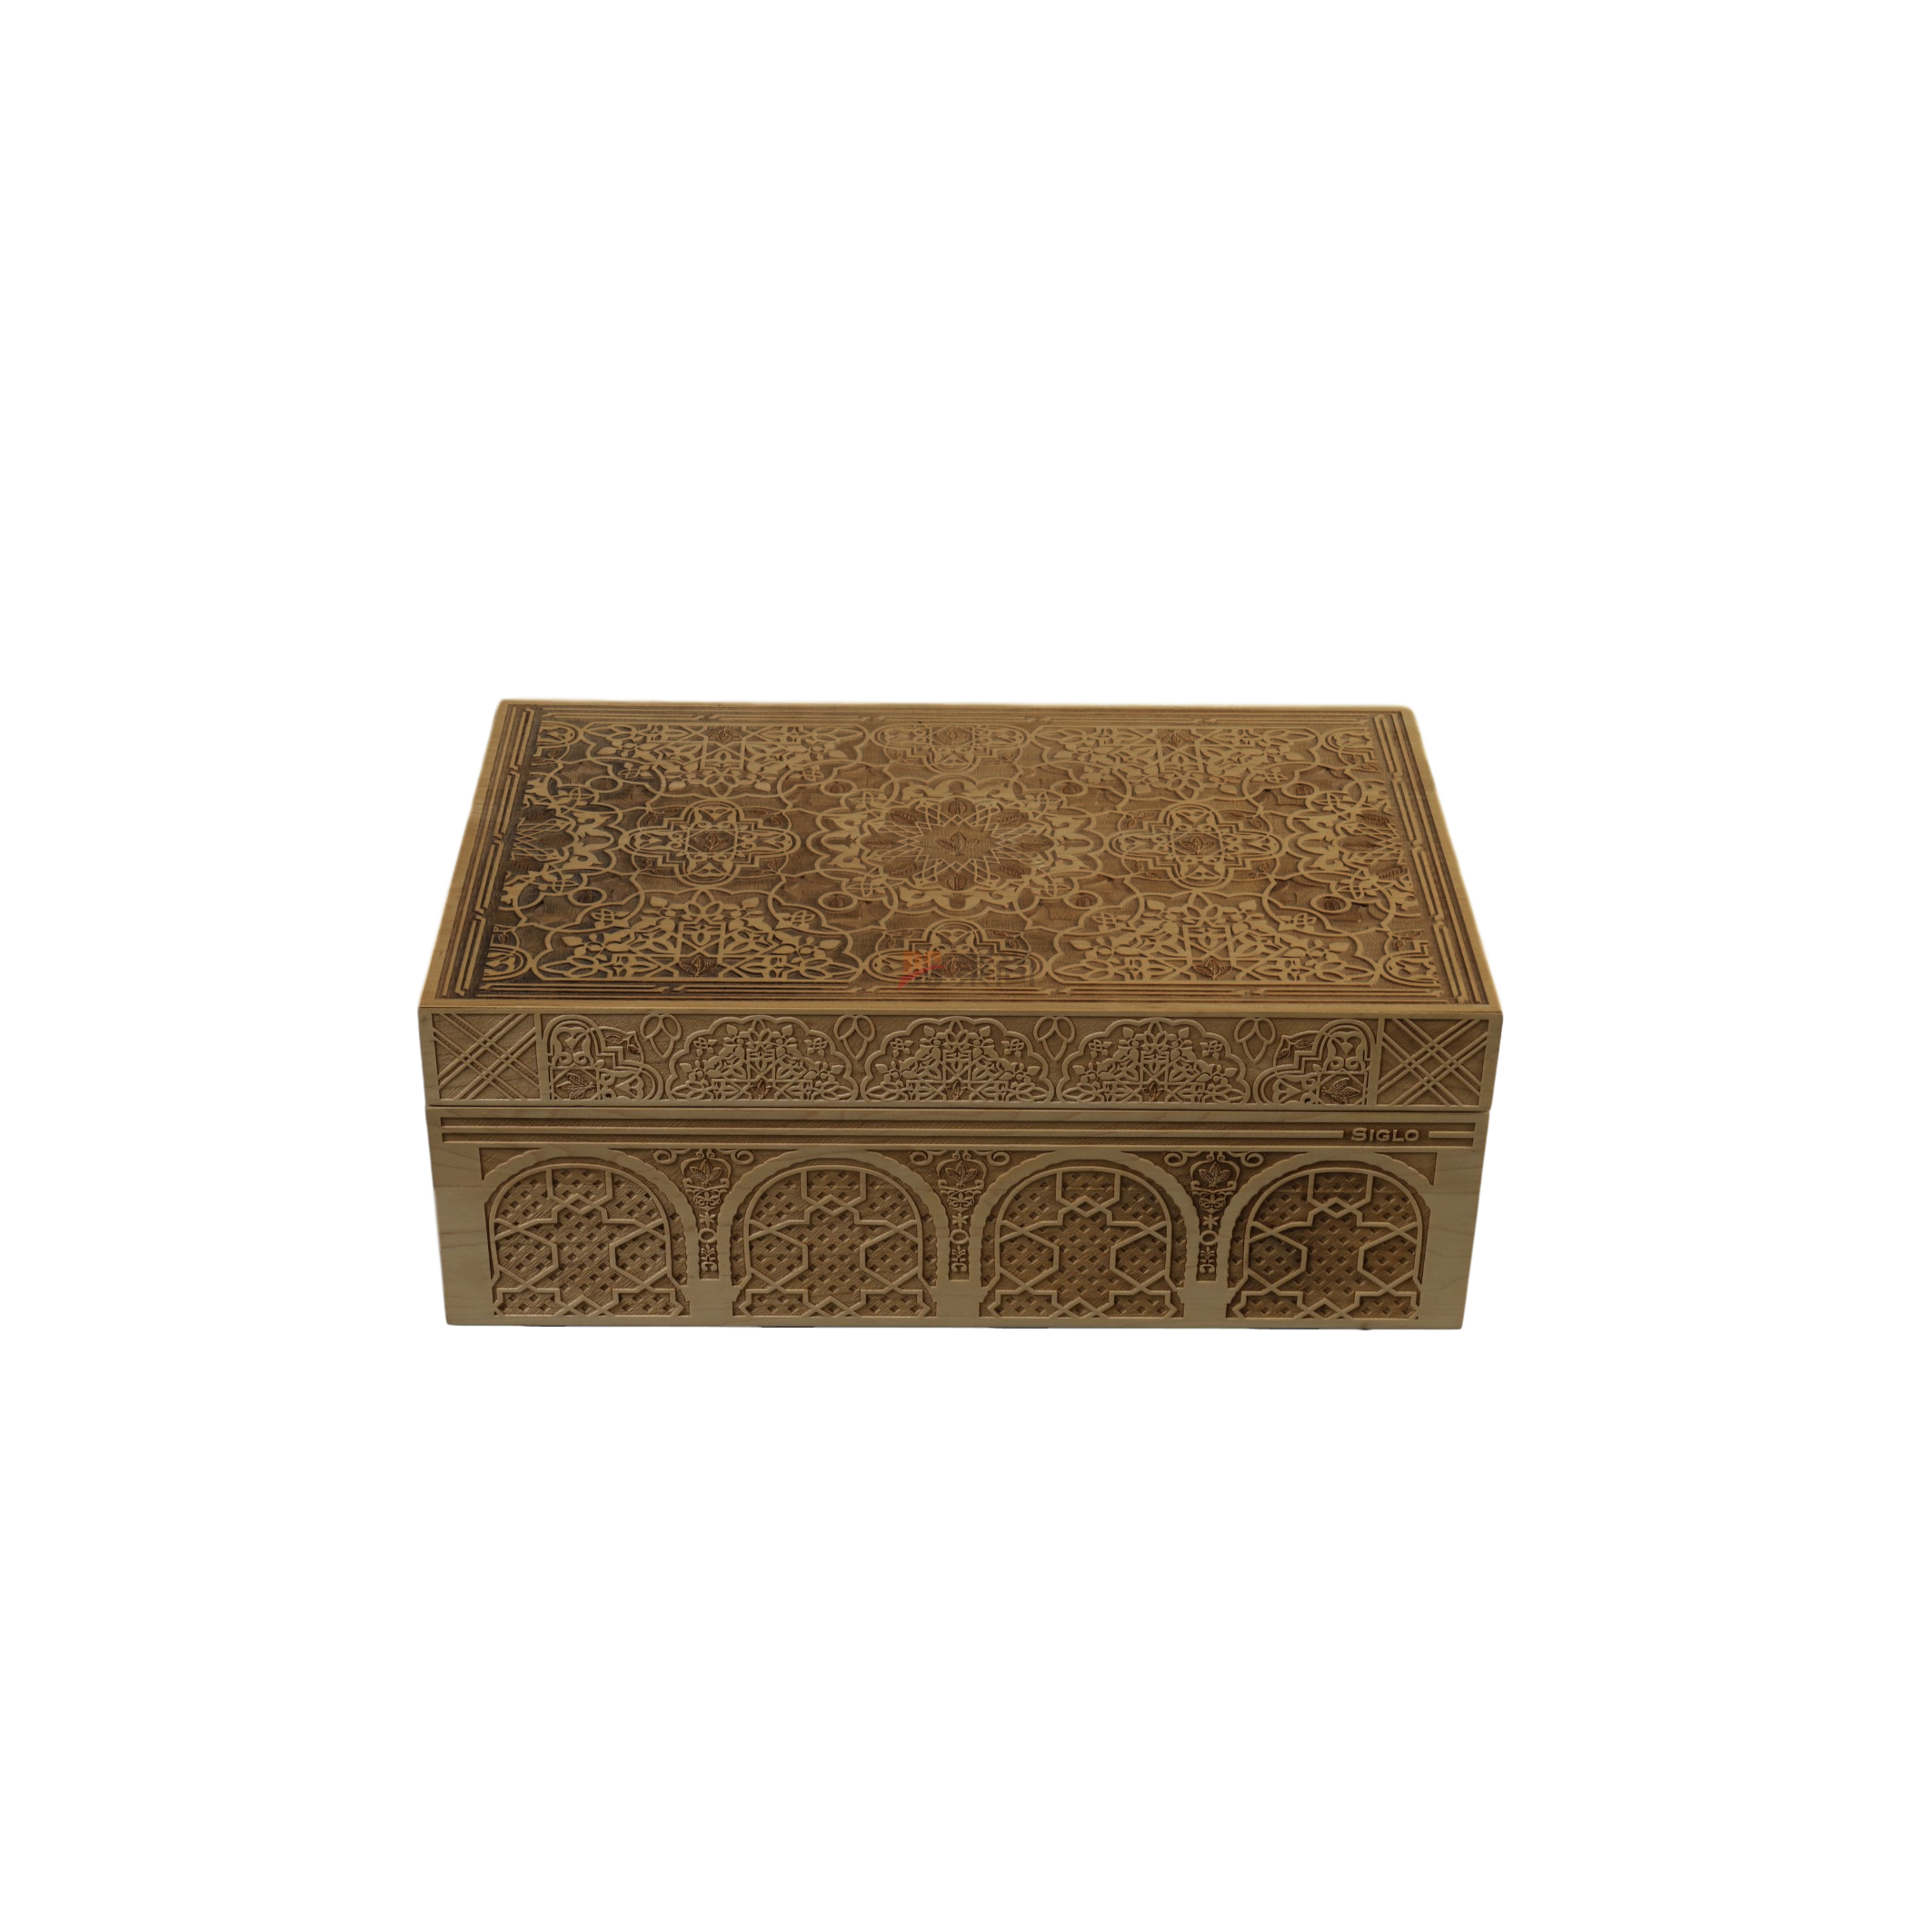 DSC-1009優質楓木激光雕刻雪松奧古曼保鮮雪茄盒